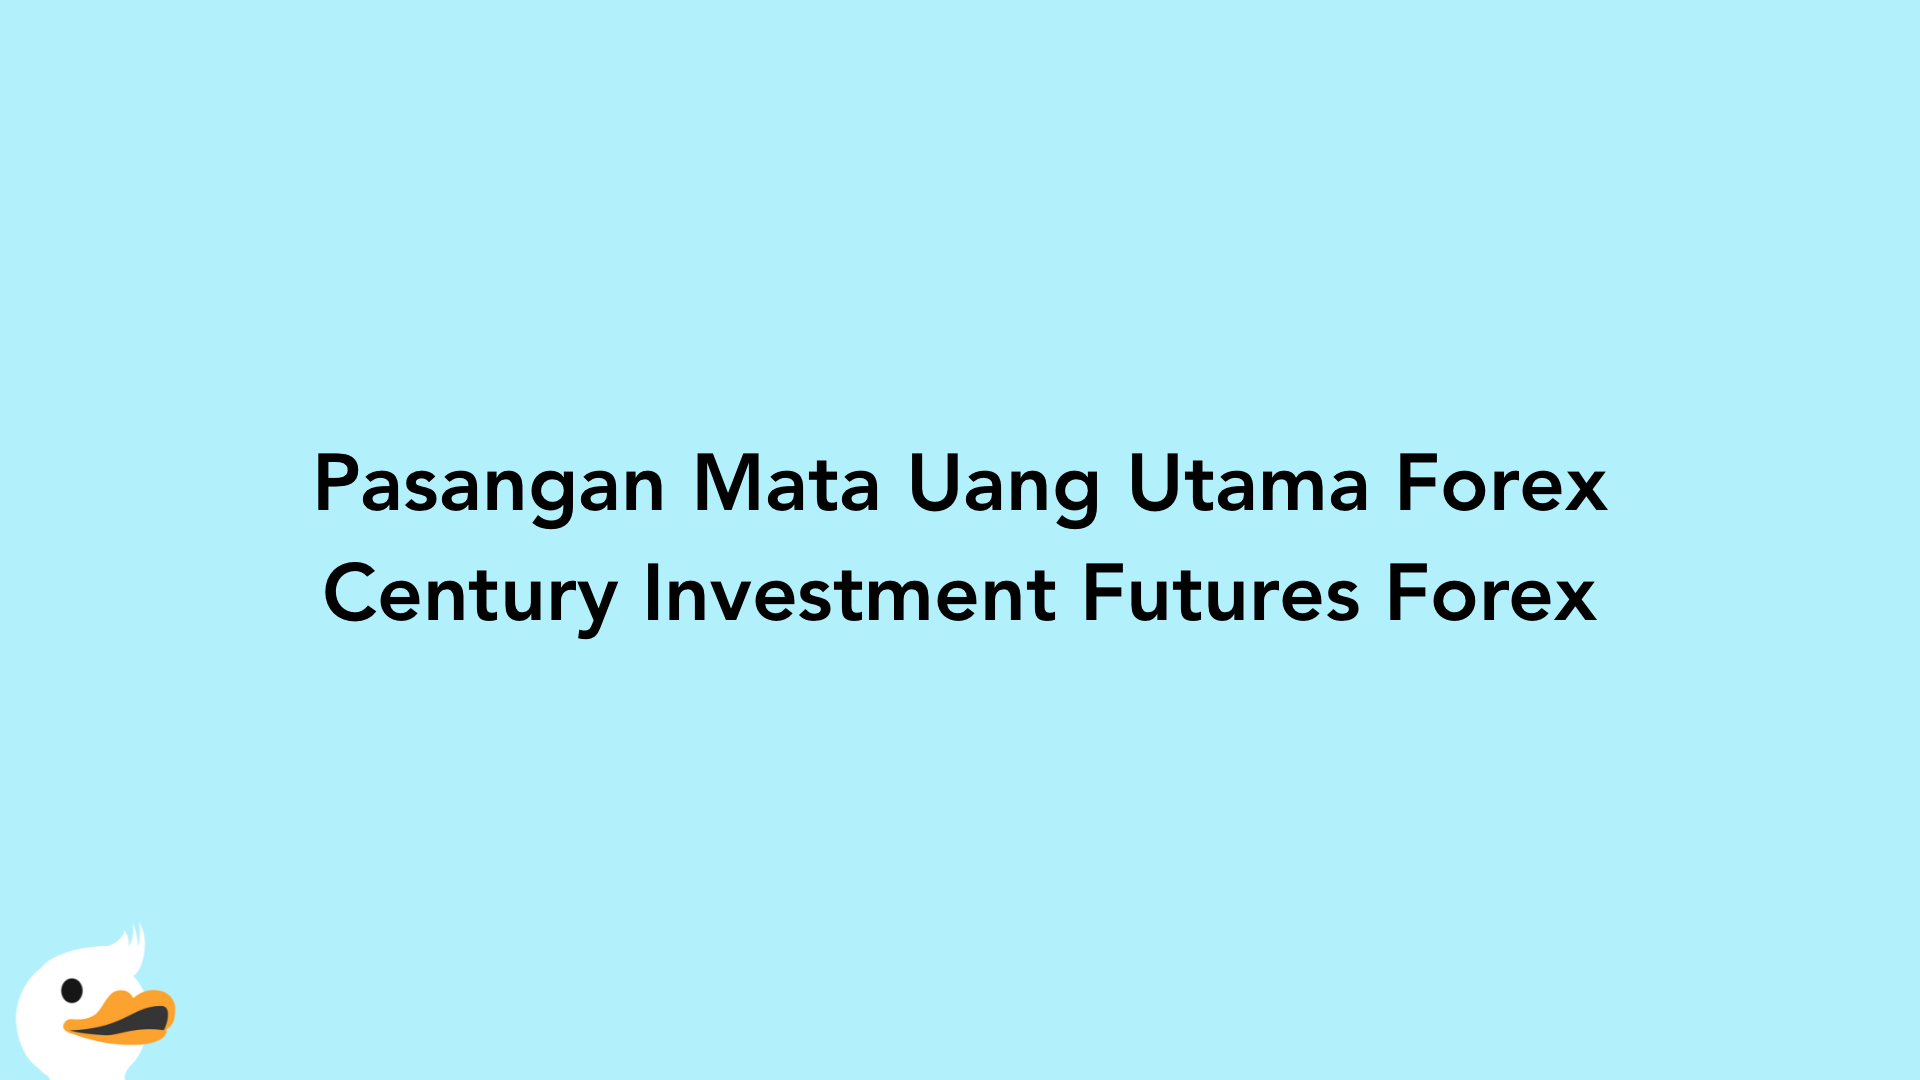 Pasangan Mata Uang Utama Forex Century Investment Futures Forex